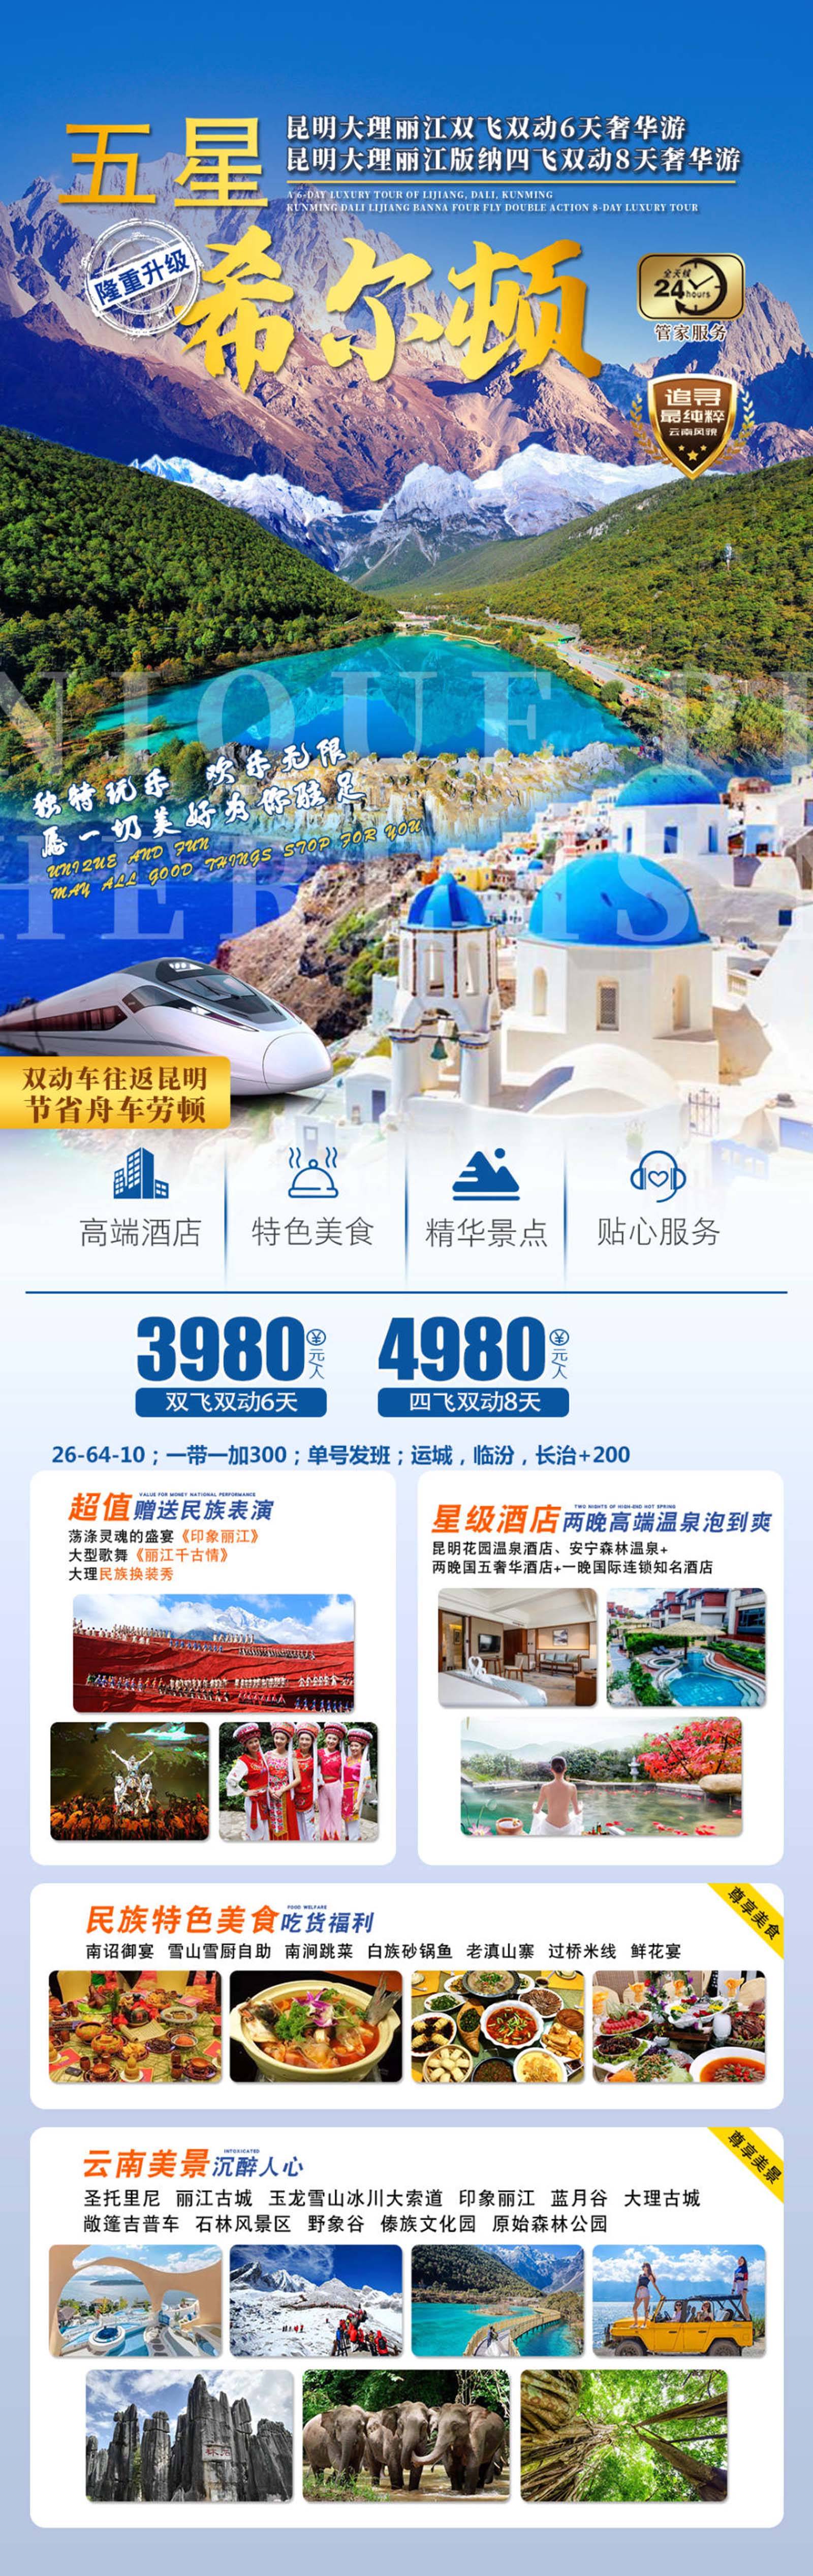 云南休闲旅游品牌宣传系列海报-第3张